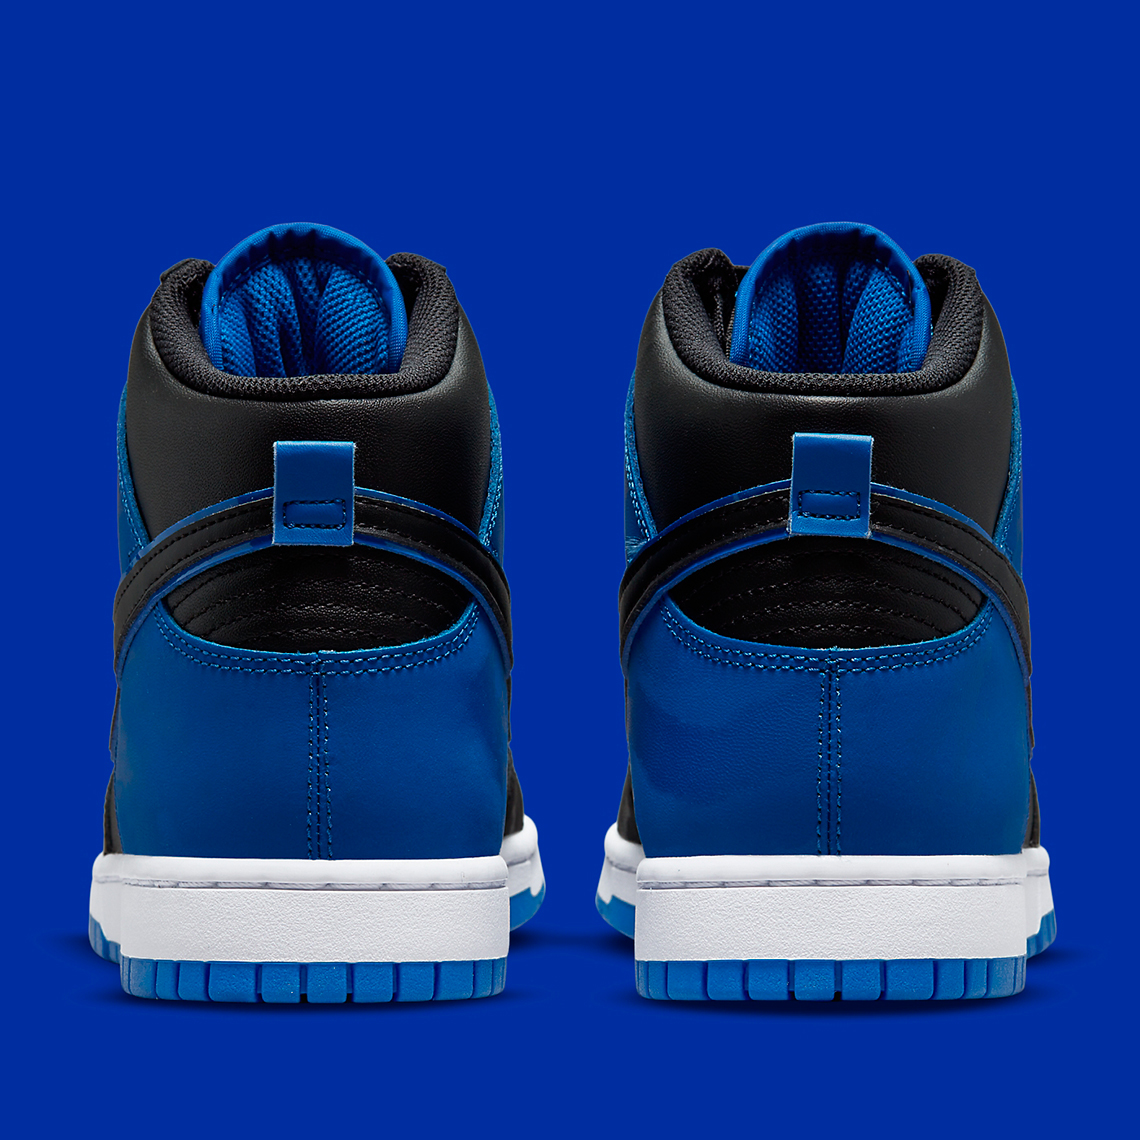 Nike Dunk High Blue Camo Dd3359 001 Release Date 4